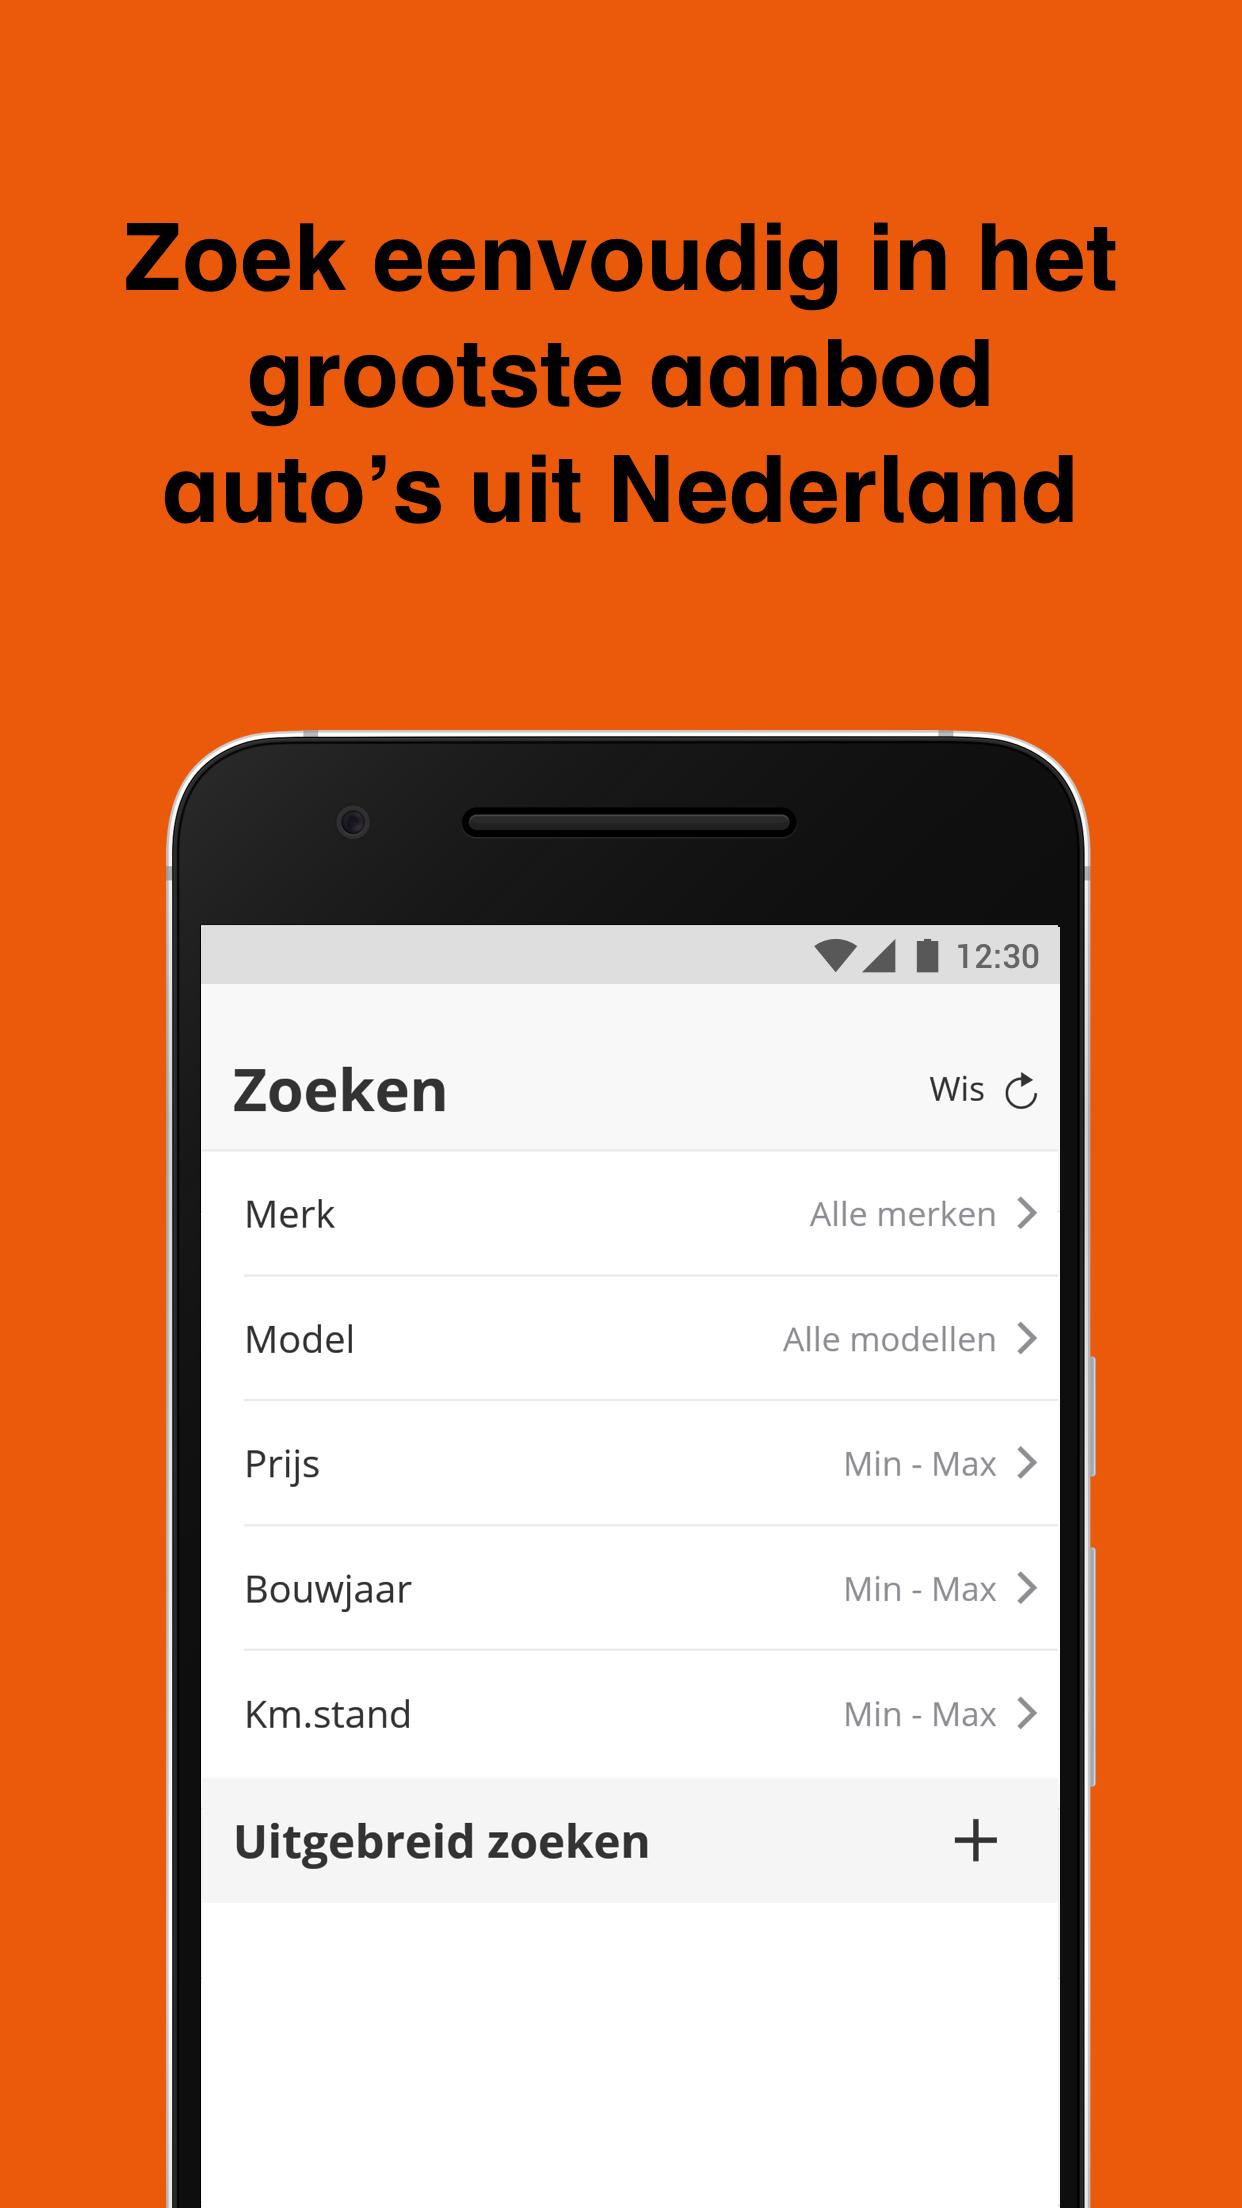 Reusachtig Dicteren bijgeloof GasPedaal.nl - Tweedehands auto zoeken en kopen for Android - APK Download